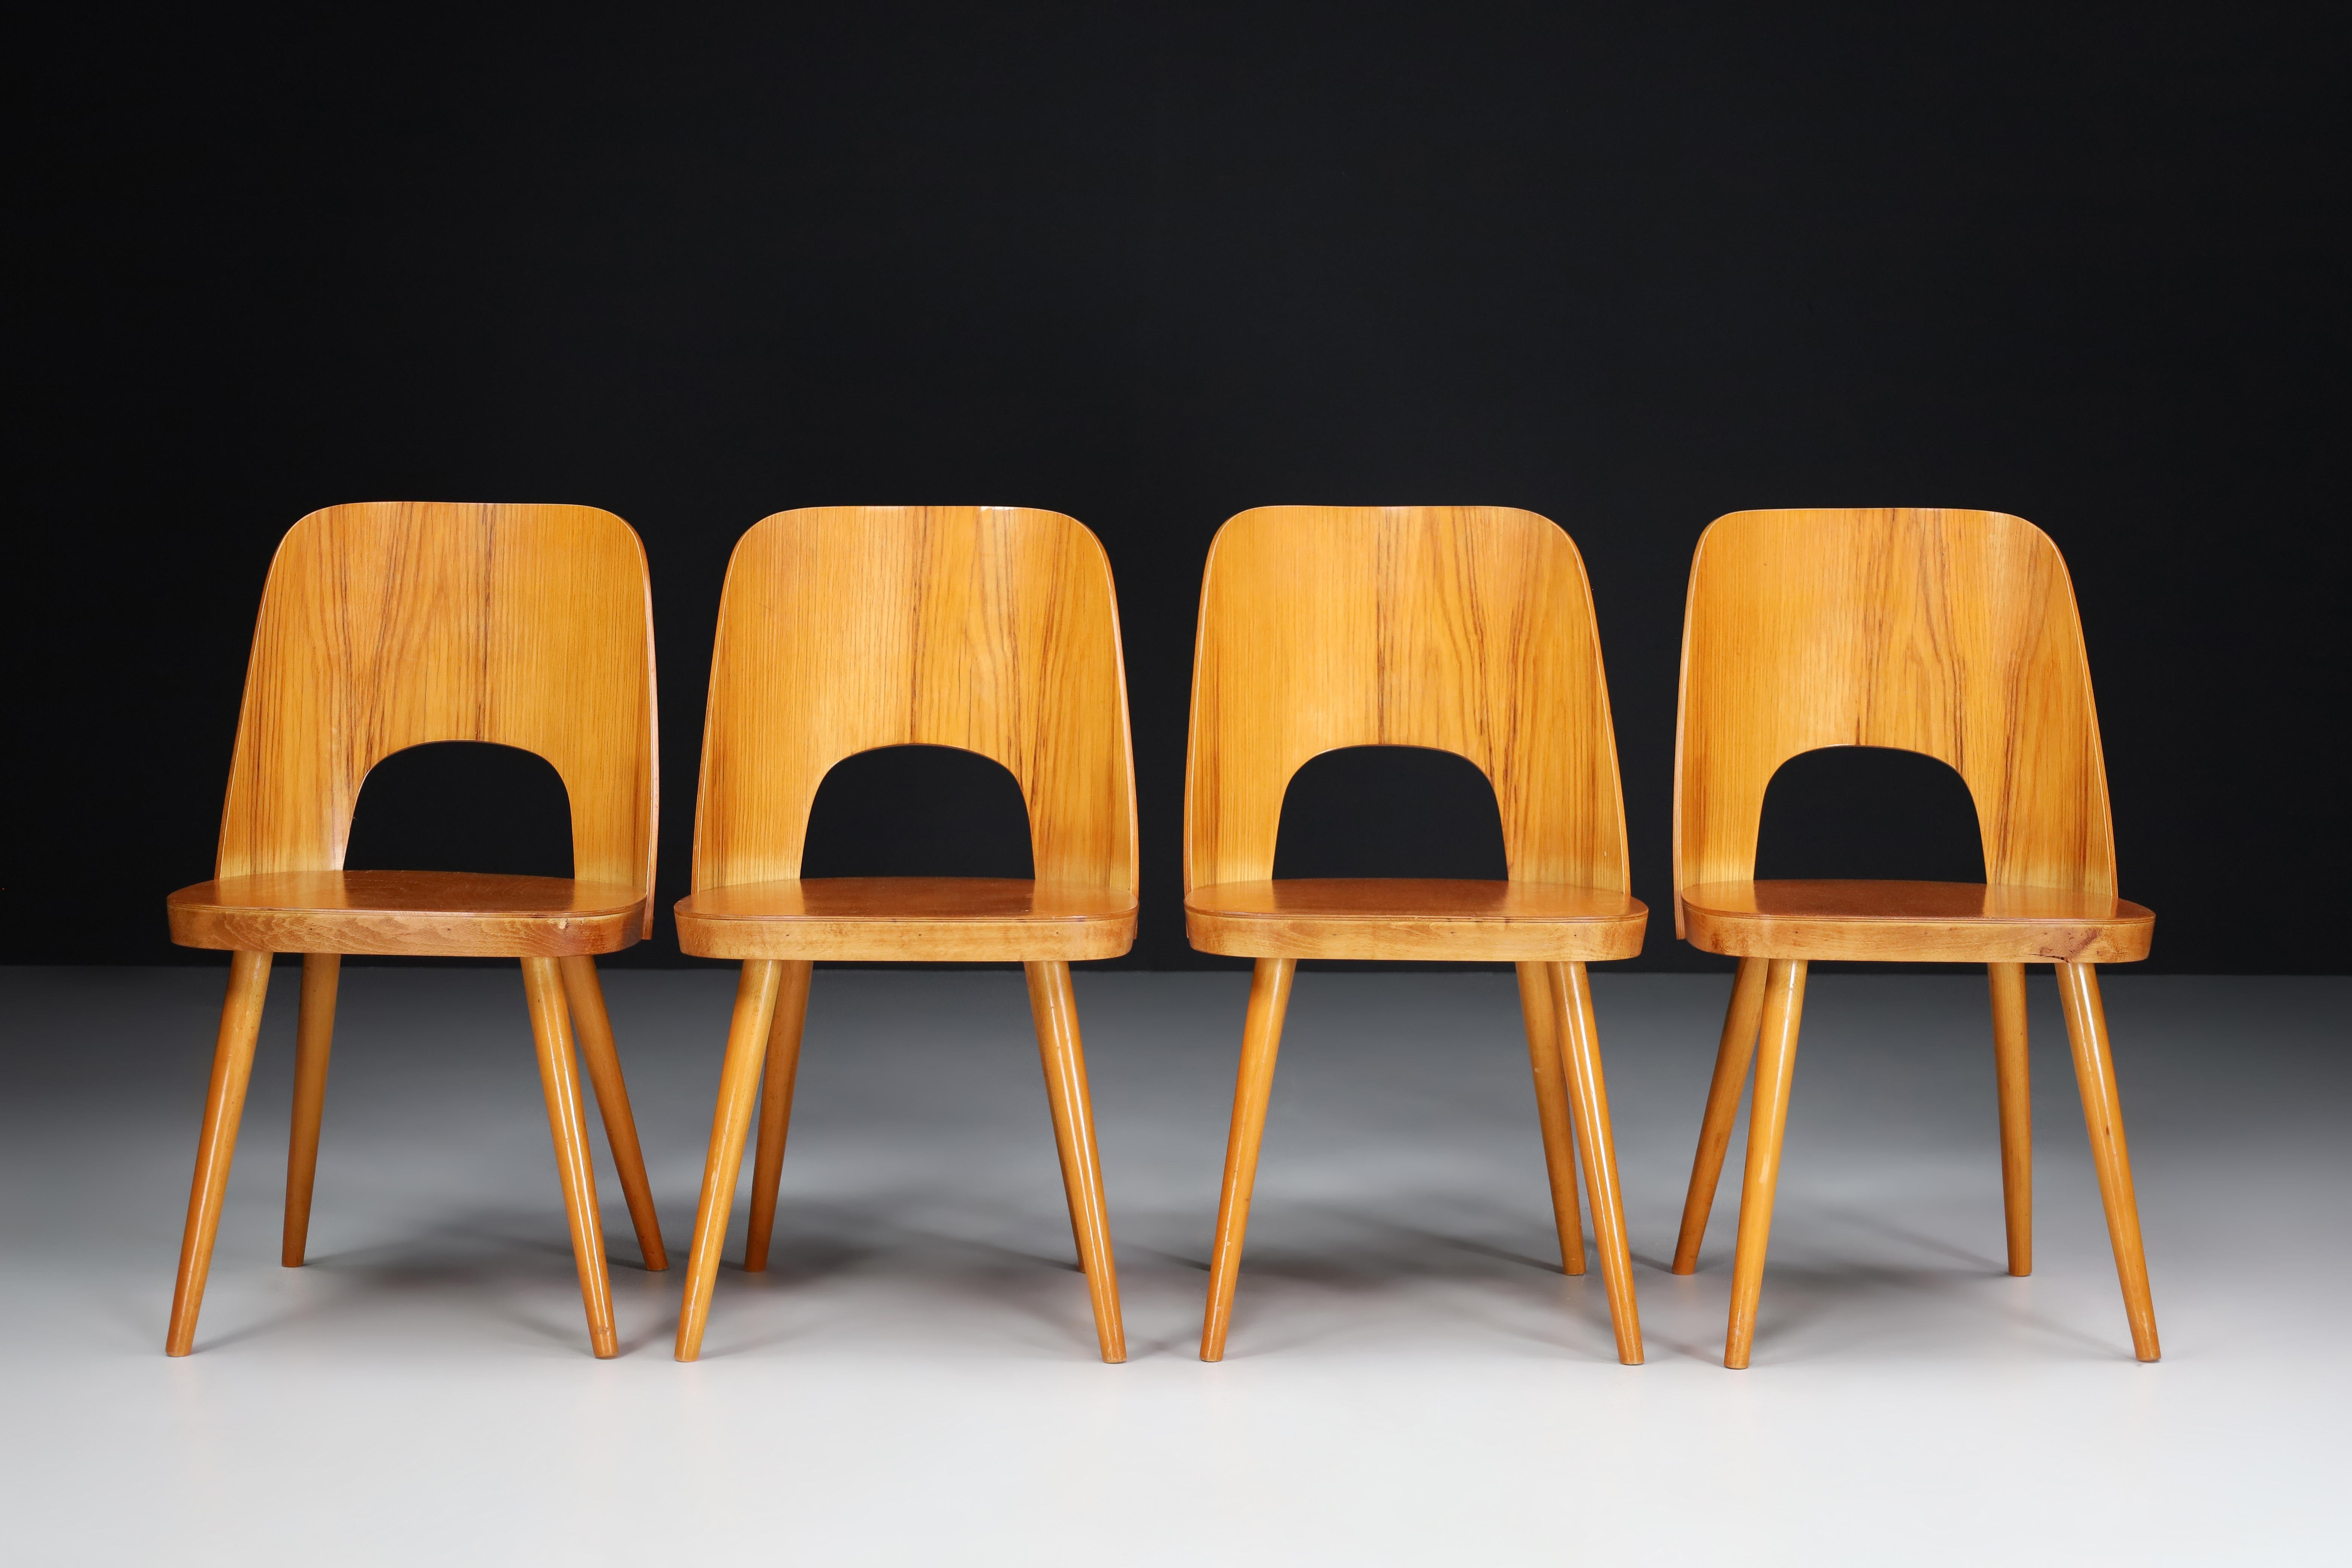 Oswald Haerdtl Satz von vier Stühlen, 1950er Jahre 

Ein seltenes Set von vier Stühlen wurde von dem österreichischen Designer Oswald Haerdtl entworfen und von Ton (Thonet) in der ehemaligen Tschechoslowakei in den 1950er Jahren hergestellt.